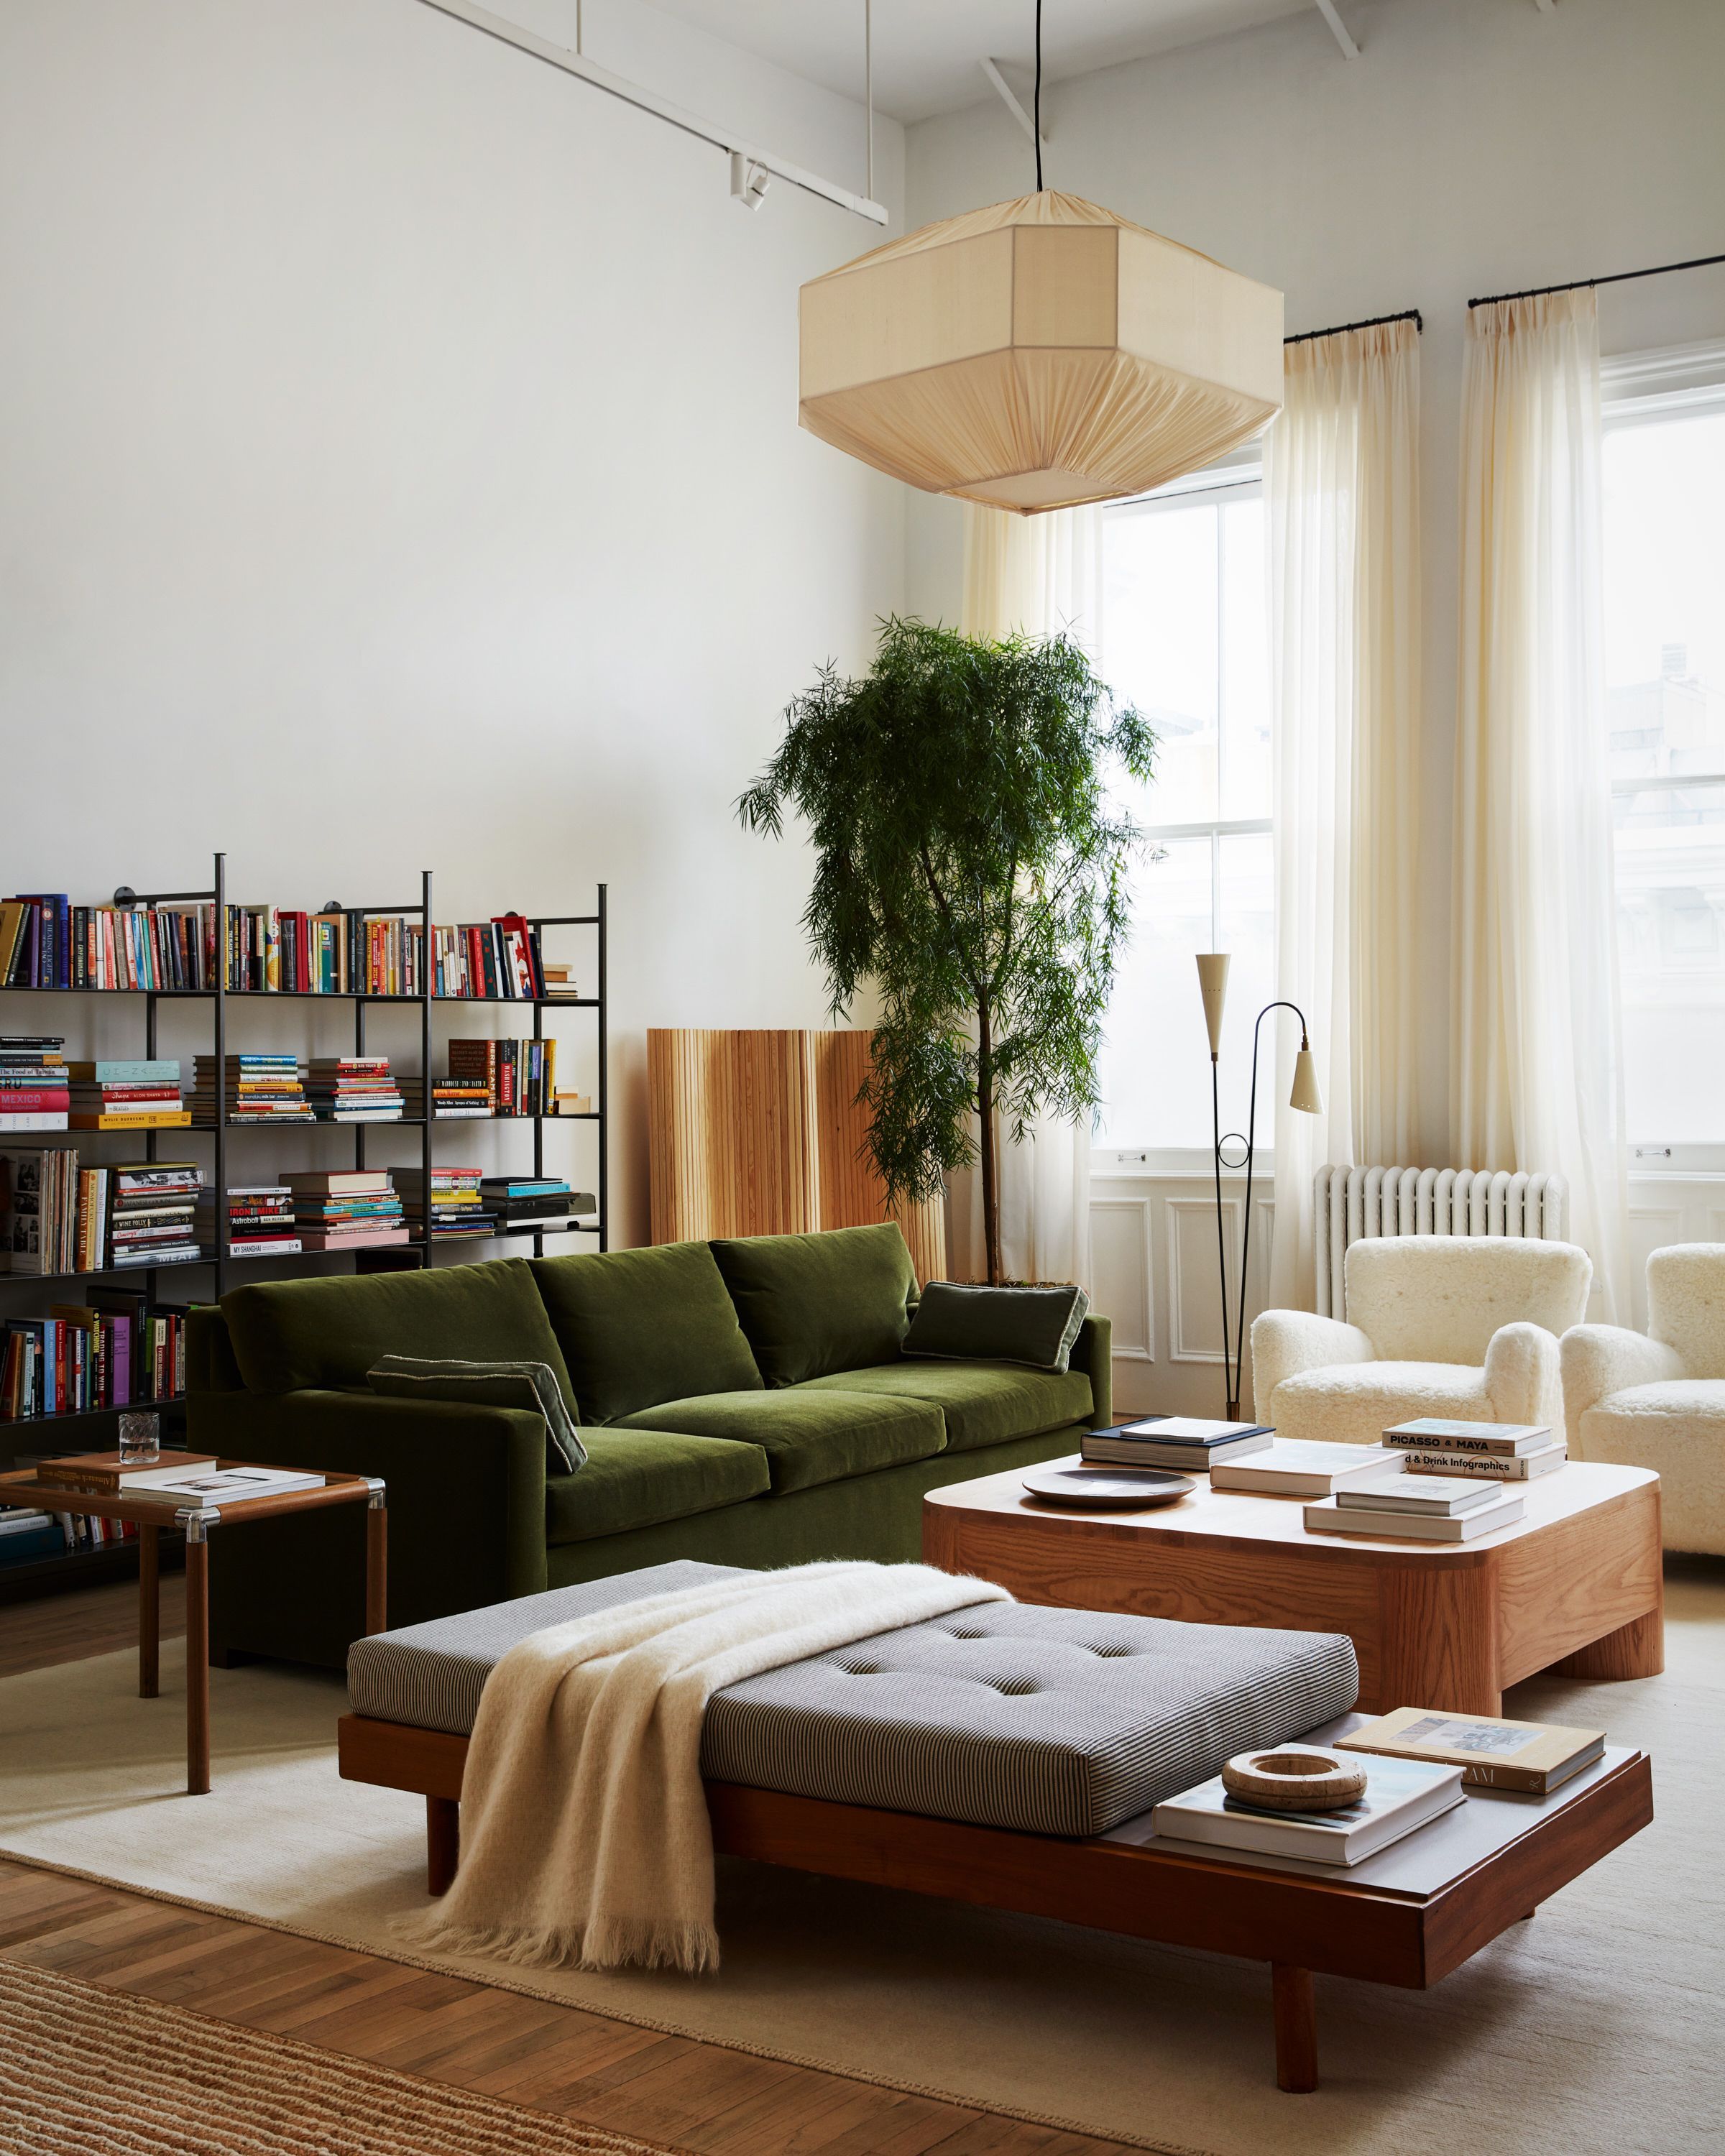 Arredare il soggiorno in stile moderno: idee e consigli